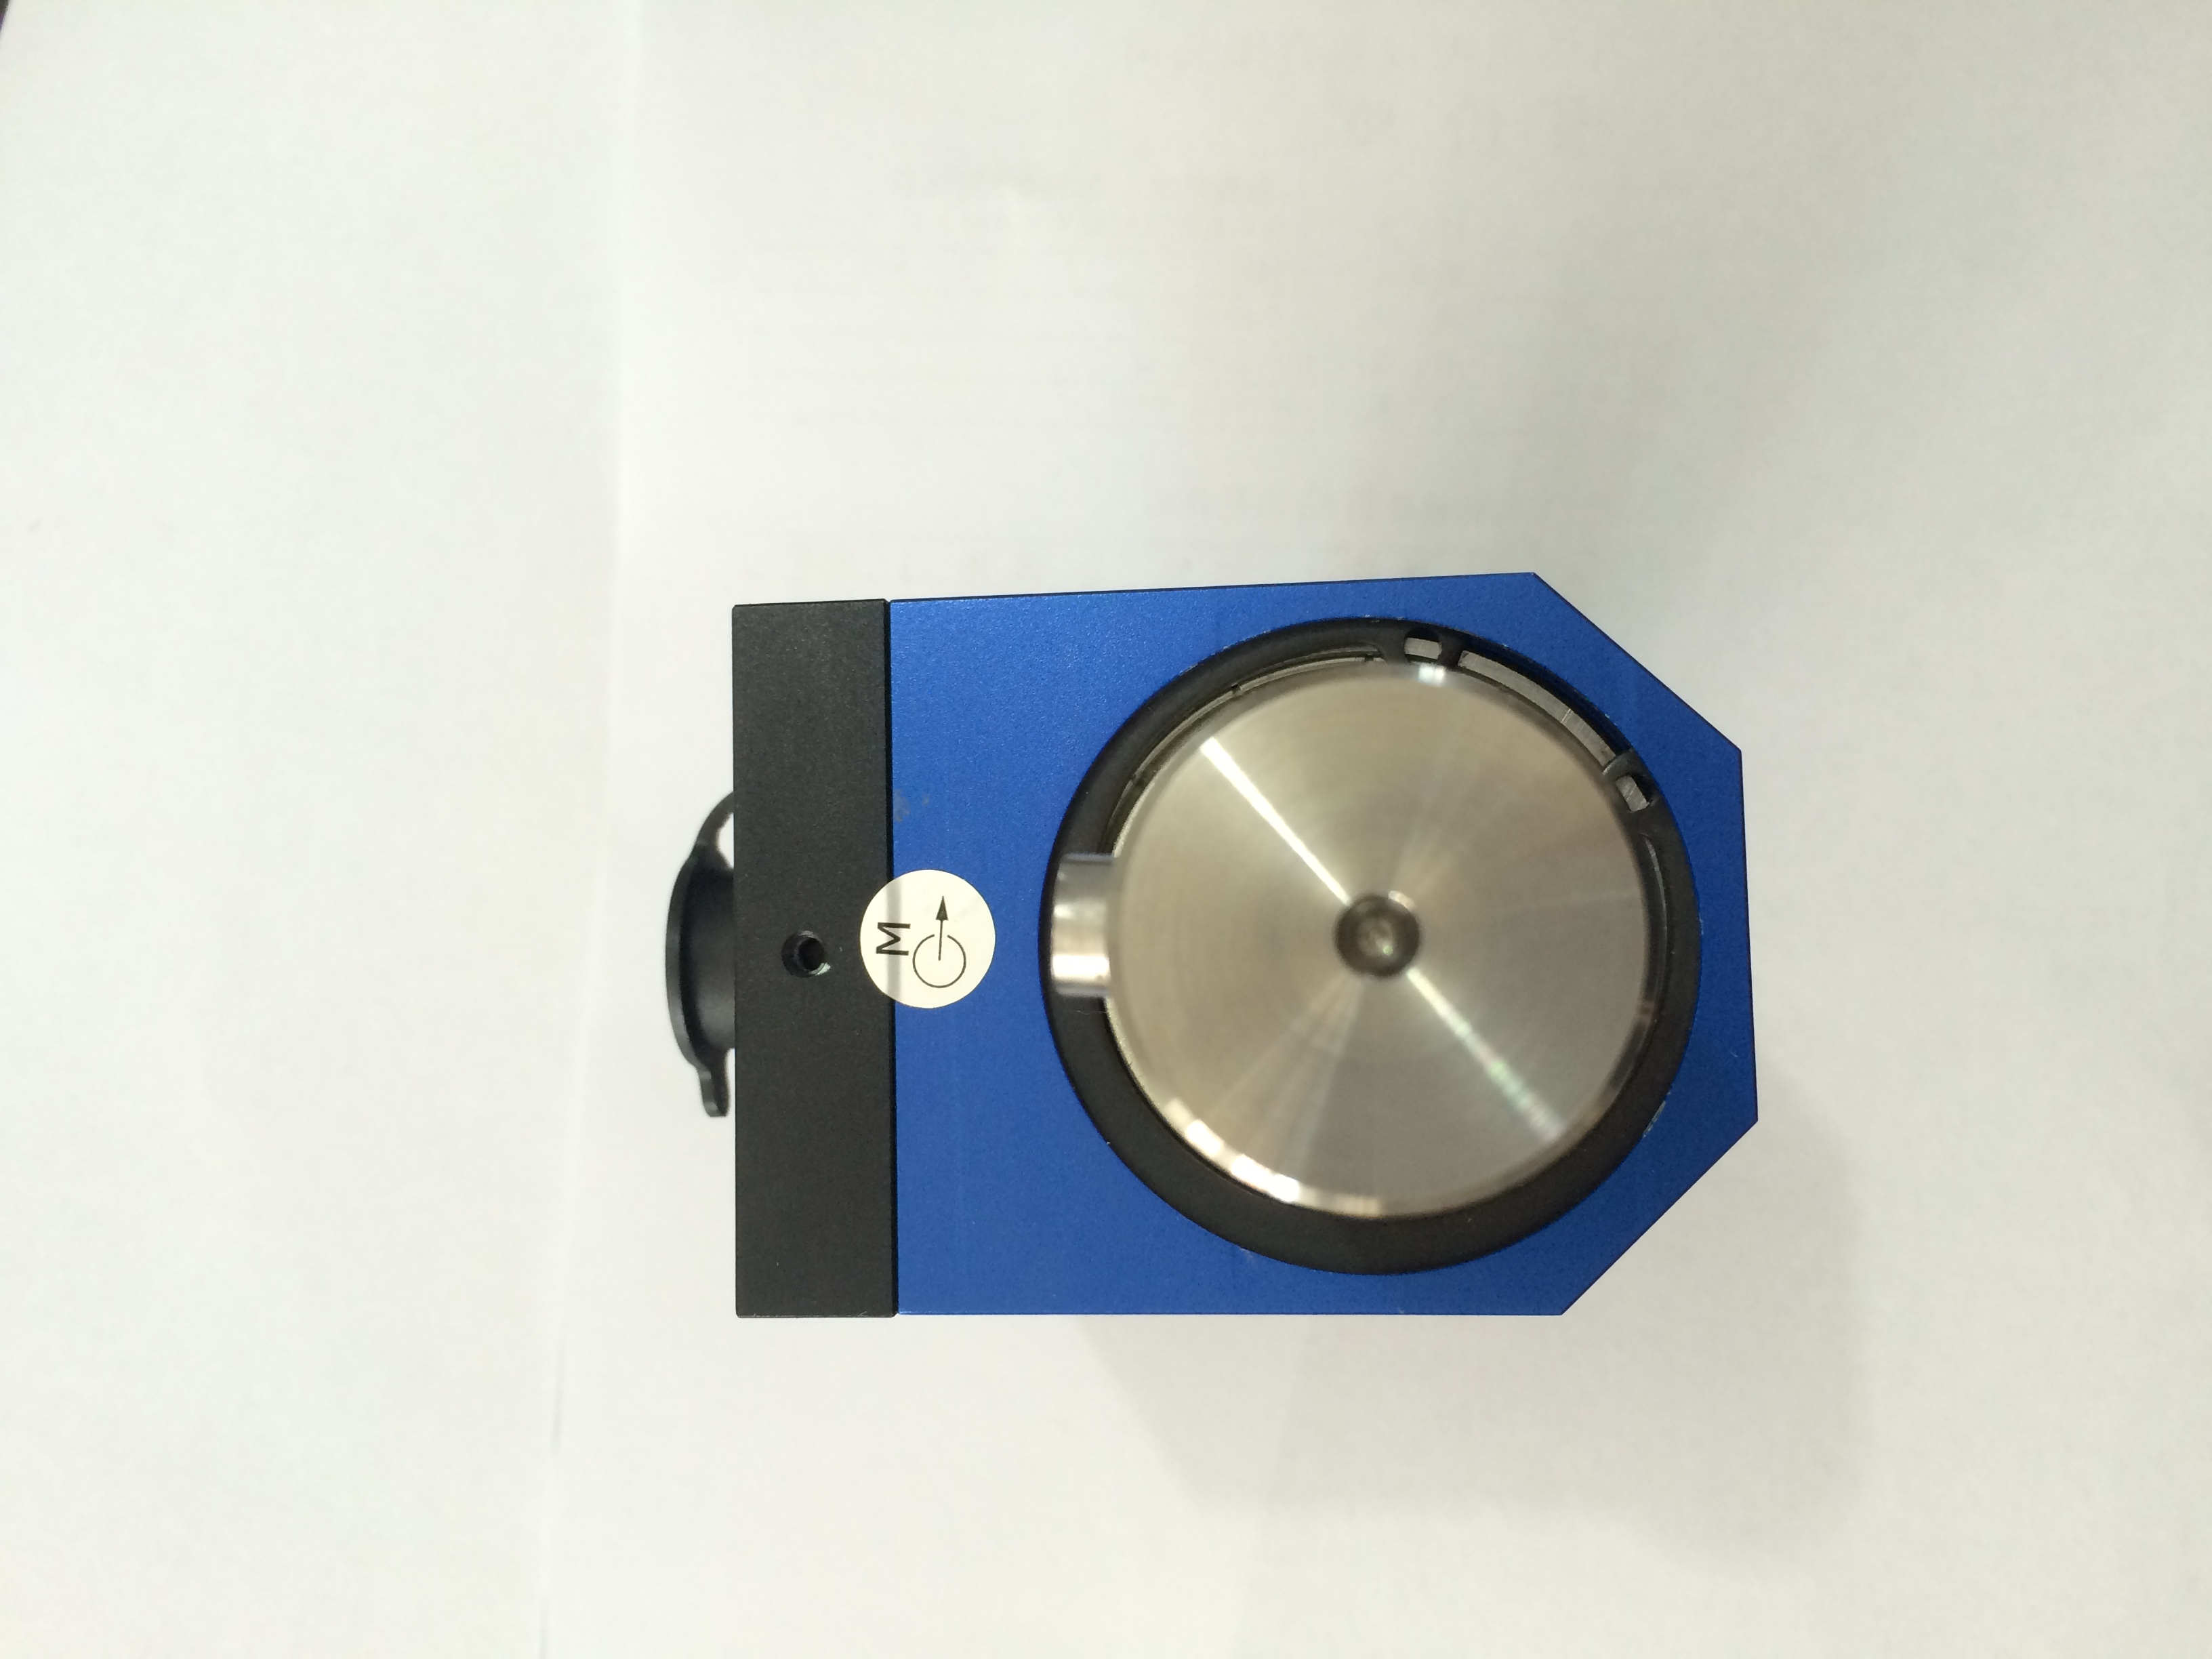 力荷  NH-9162高精度动态扭矩传感器 扭矩传感器,动态扭矩传感器,传感器,动态扭力传感器,高频响扭矩传感器